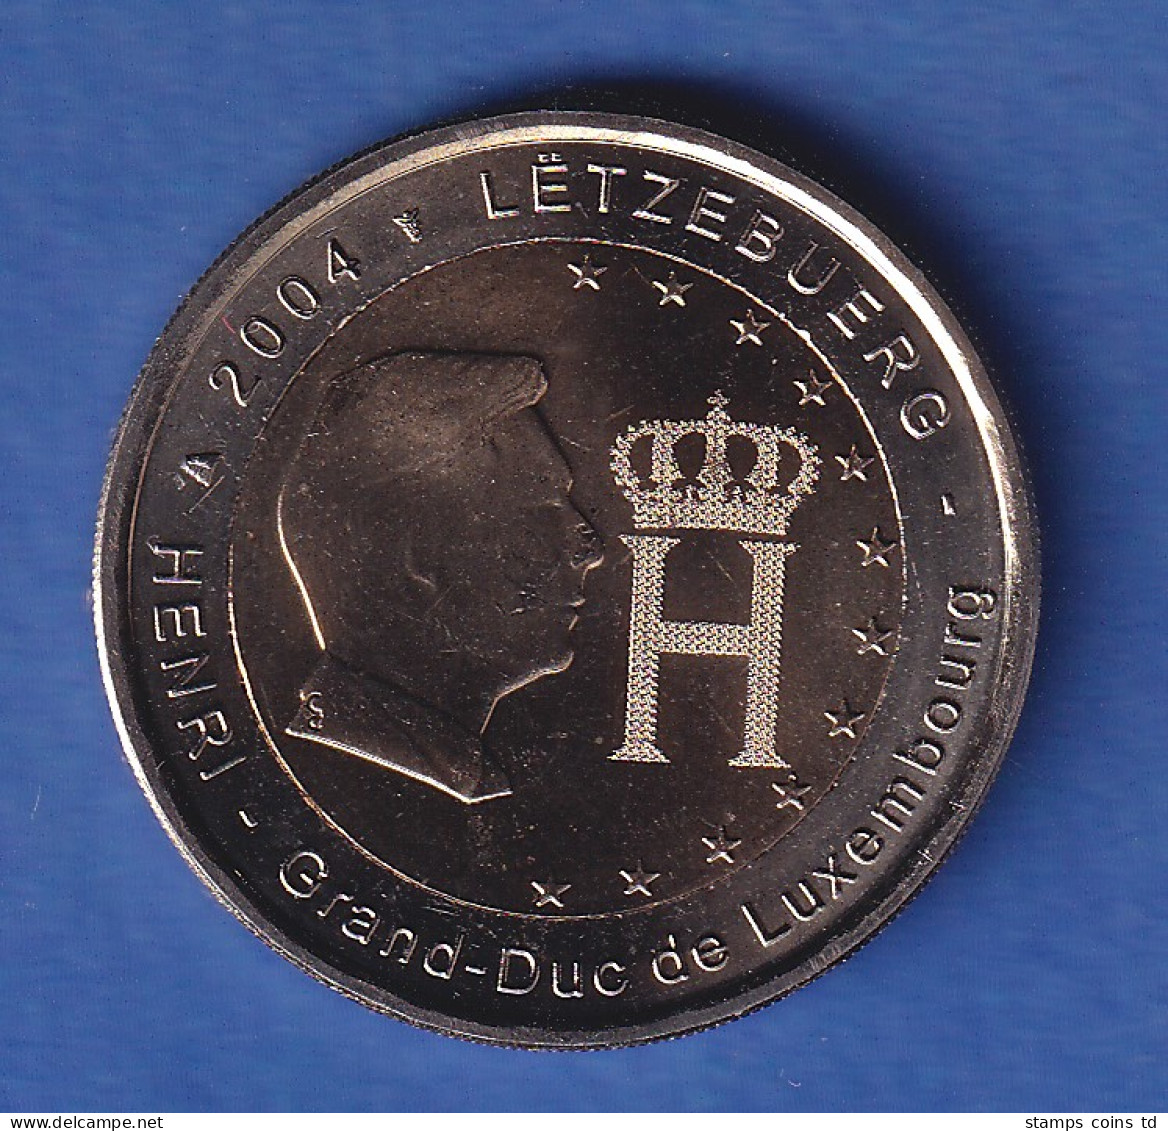 Luxemburg 2004 2-Euro-Sondermünze Henri Und Monogramm Bankfr. Unzirk. - Luxembourg